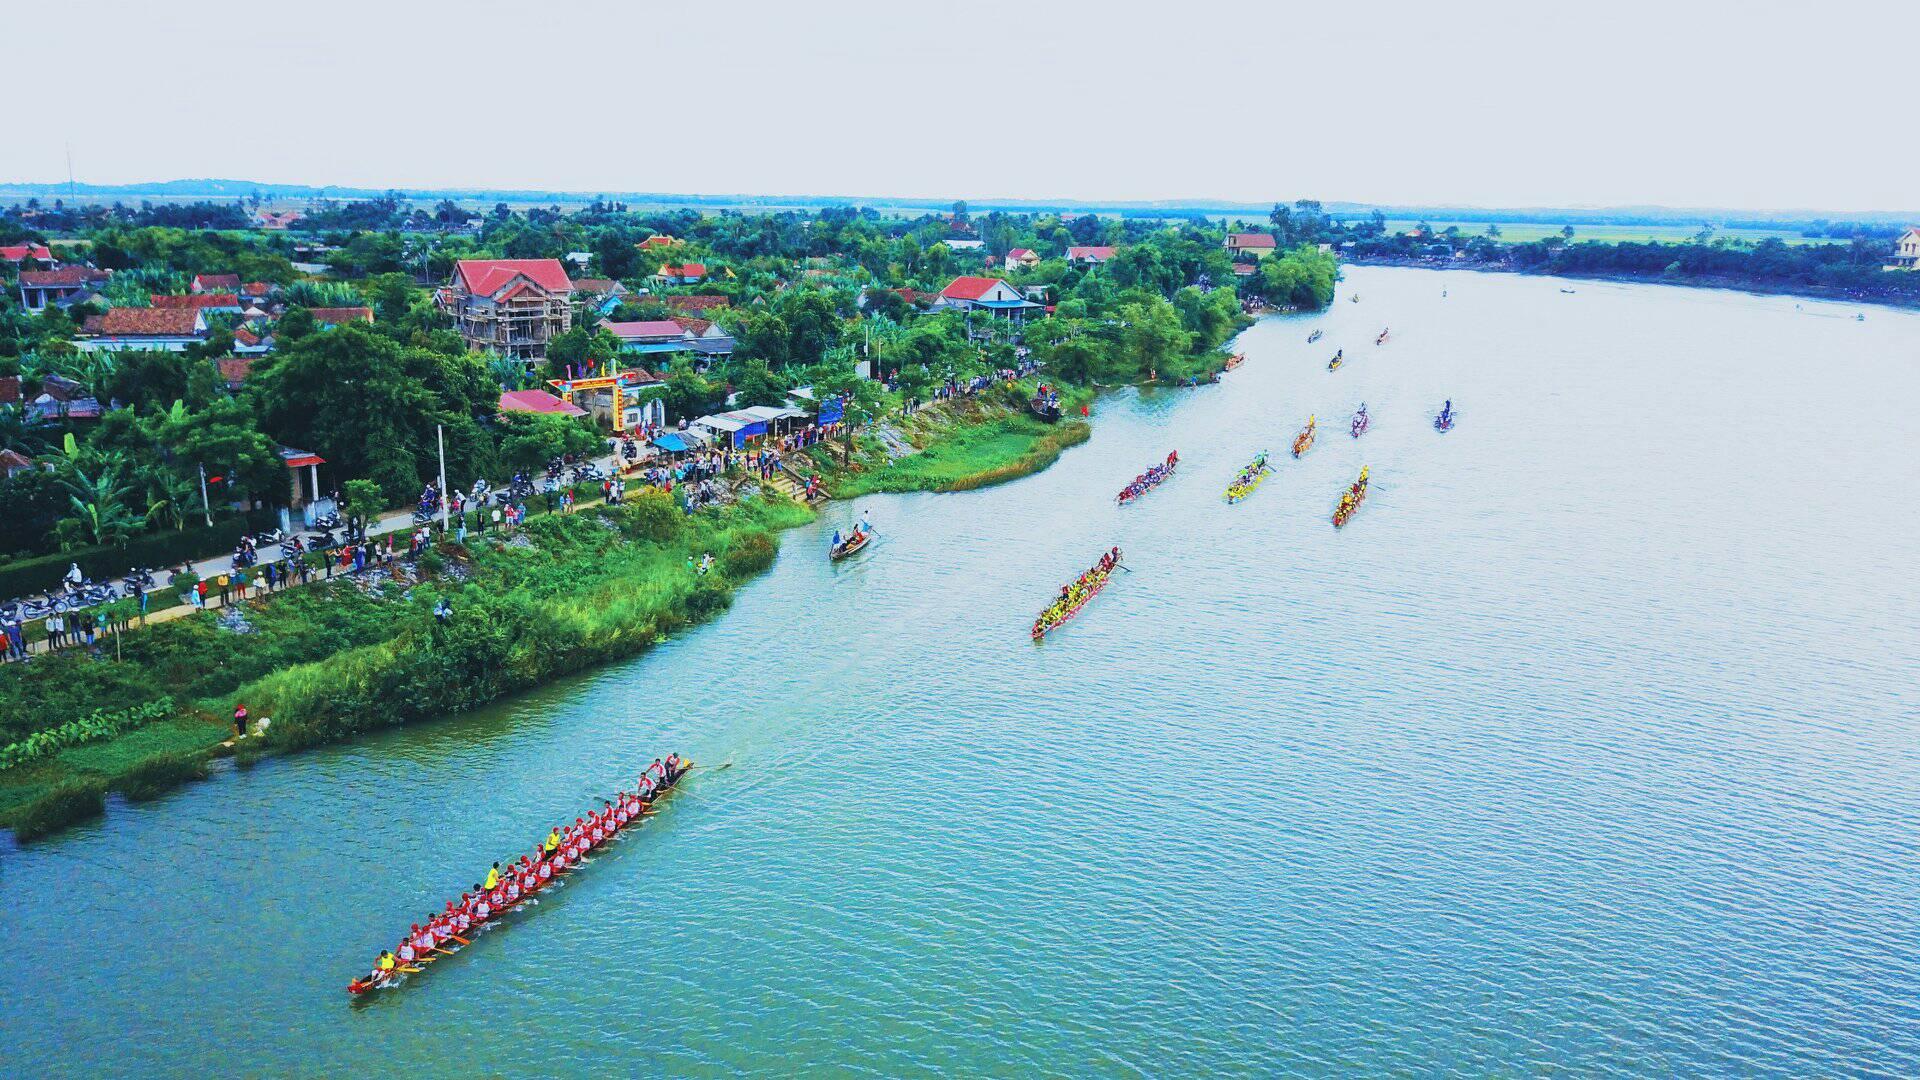 Lễ hội đua thuyền truyền thống Lệ Thủy - Lễ hội đua thuyền lớn nhất Nghệ An, mang trong mình sức quyến rũ và sức hấp dẫn khó cưỡng lại. Hãy cùng đến Lệ Thủy, để bị cuốn hút bởi những đòn trống rộn ràng, tiếng cười vang lên từ hàng vạn người hân hoan đón chờ.